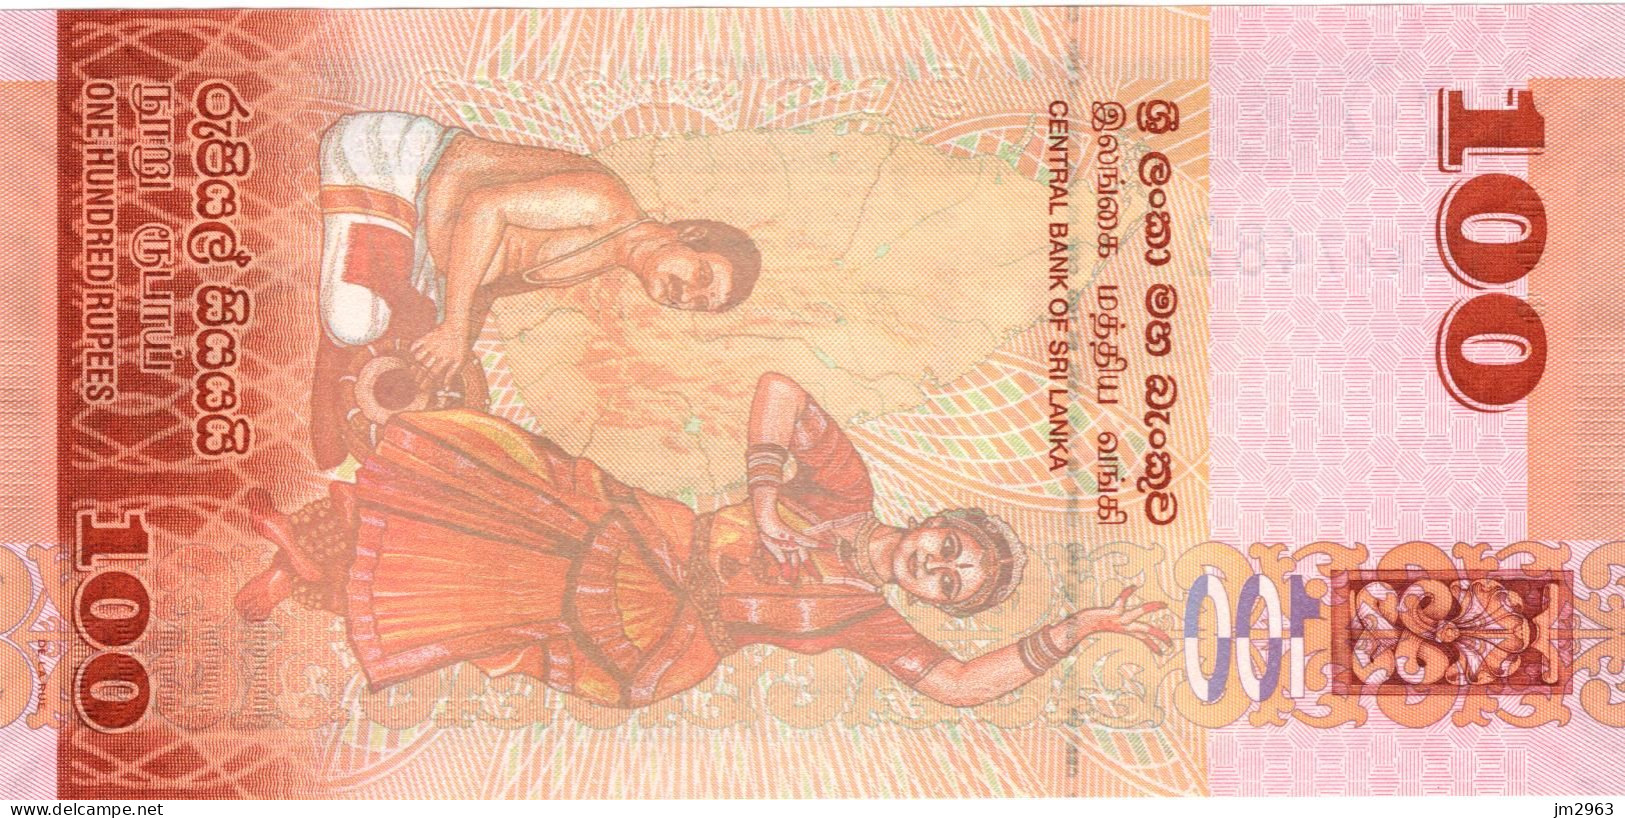 SRI LANKA 100 RUPEES UNC 04.02.2015  U335/647482 - Sri Lanka